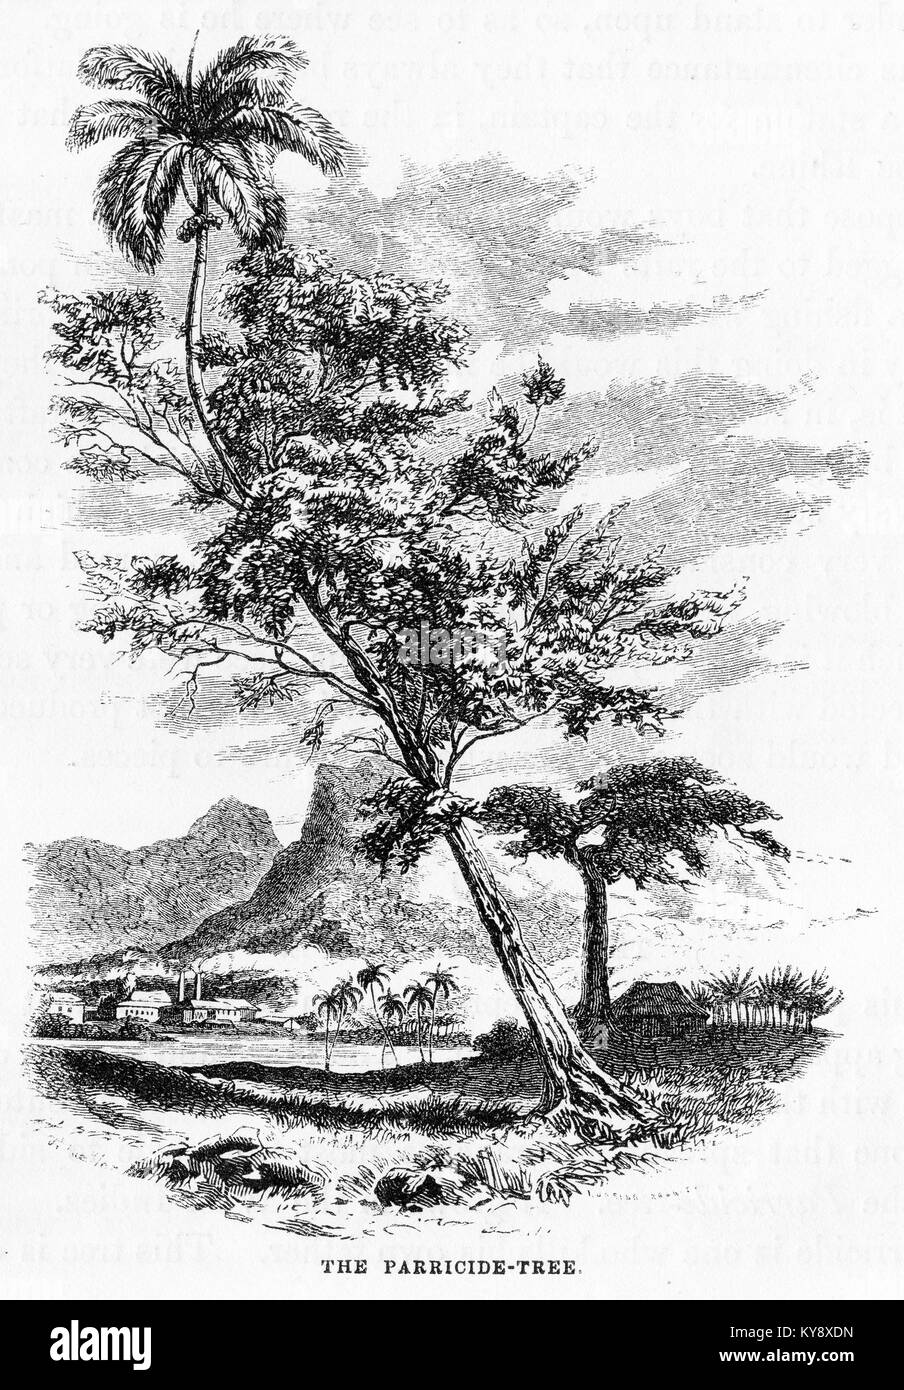 Grabado de una especie de árbol que crece parasitaria en un cocotero en los trópicos. A partir de un original grabado en la Harper's libros de cuentos por Jacob Abbott, 1854. Foto de stock